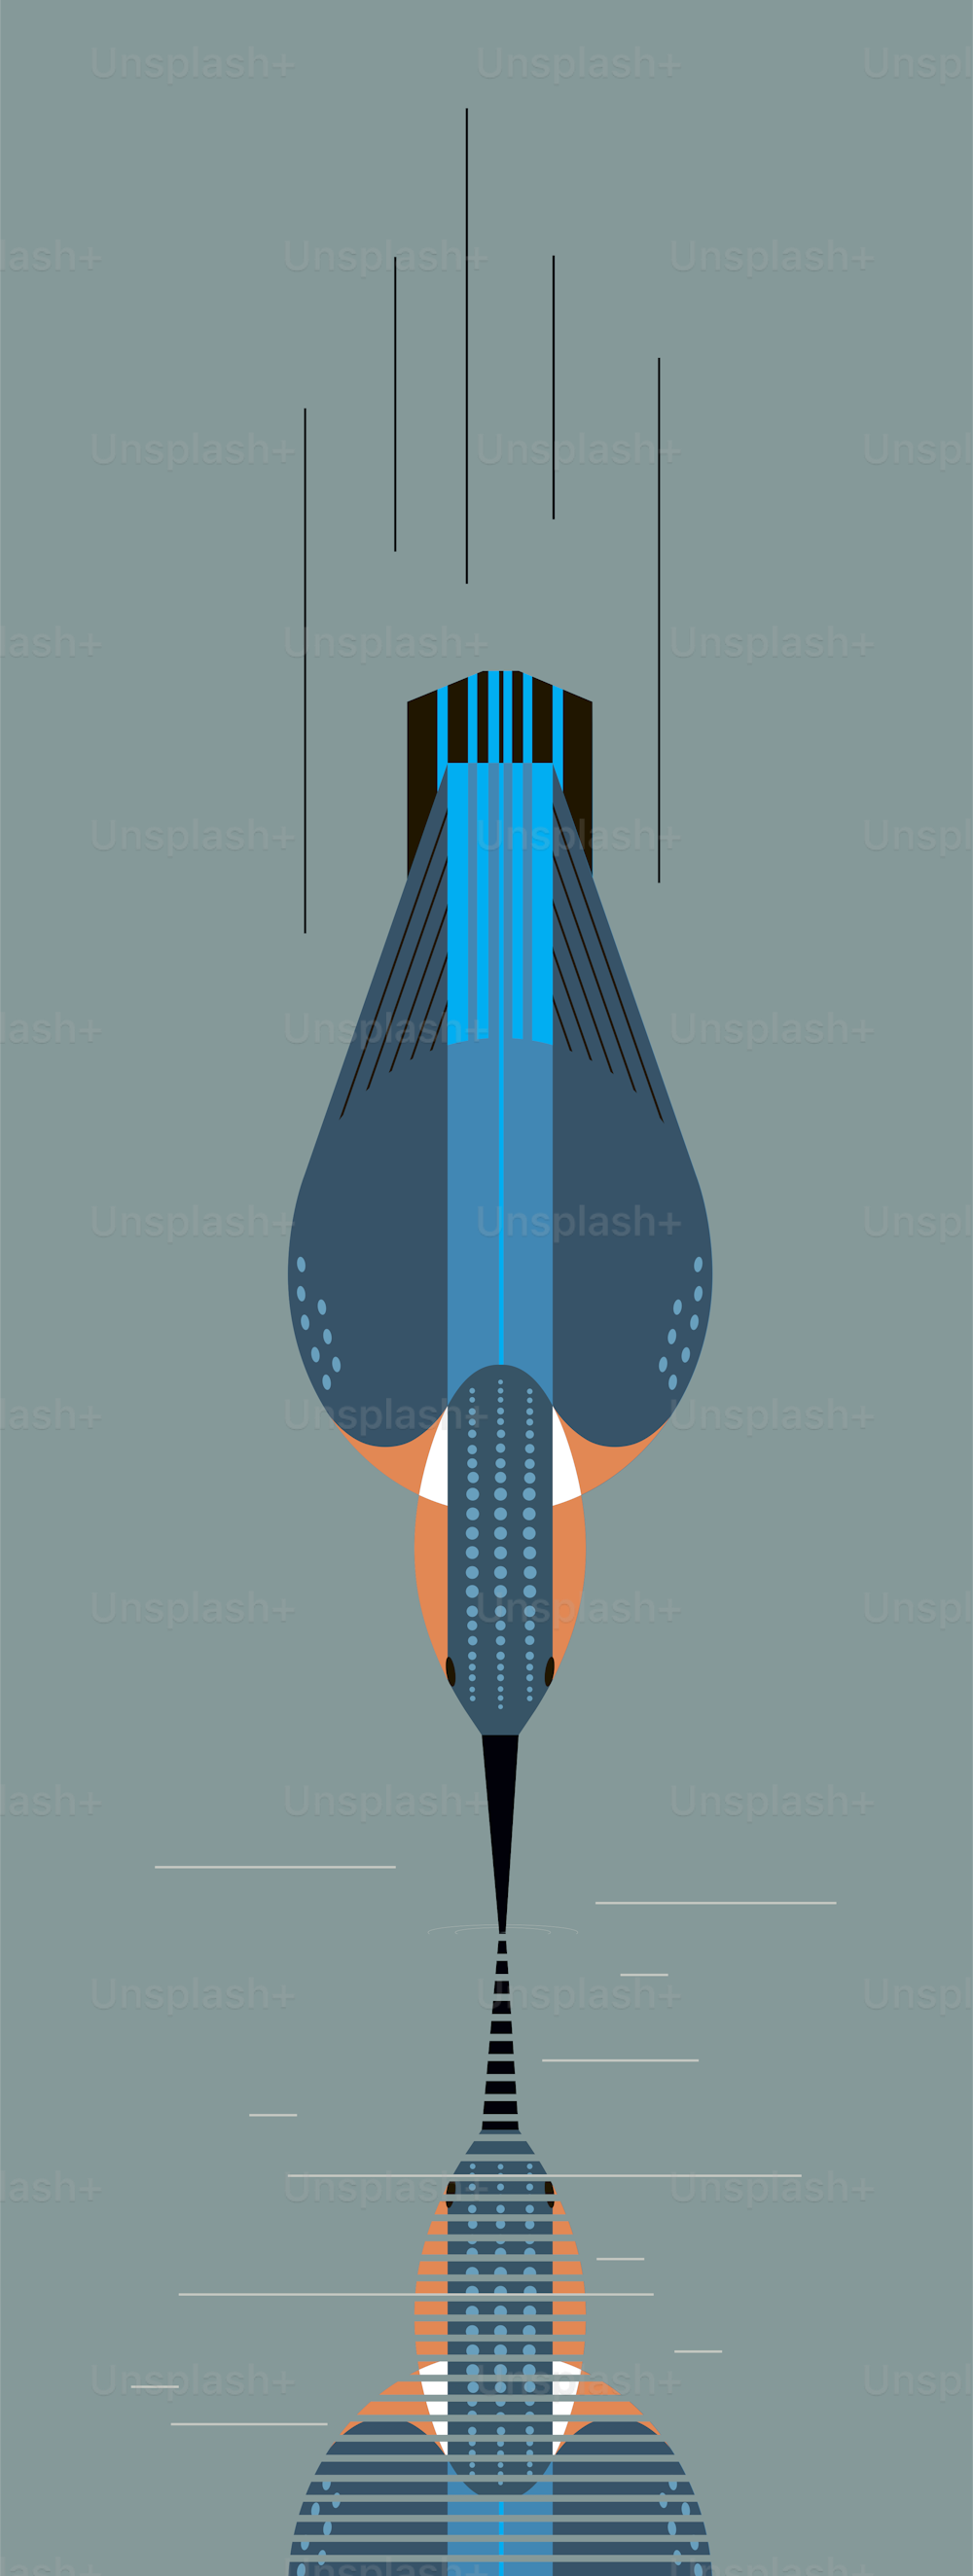 El martín pescador se sumerge en busca de presas, estilo geométrico minimalista